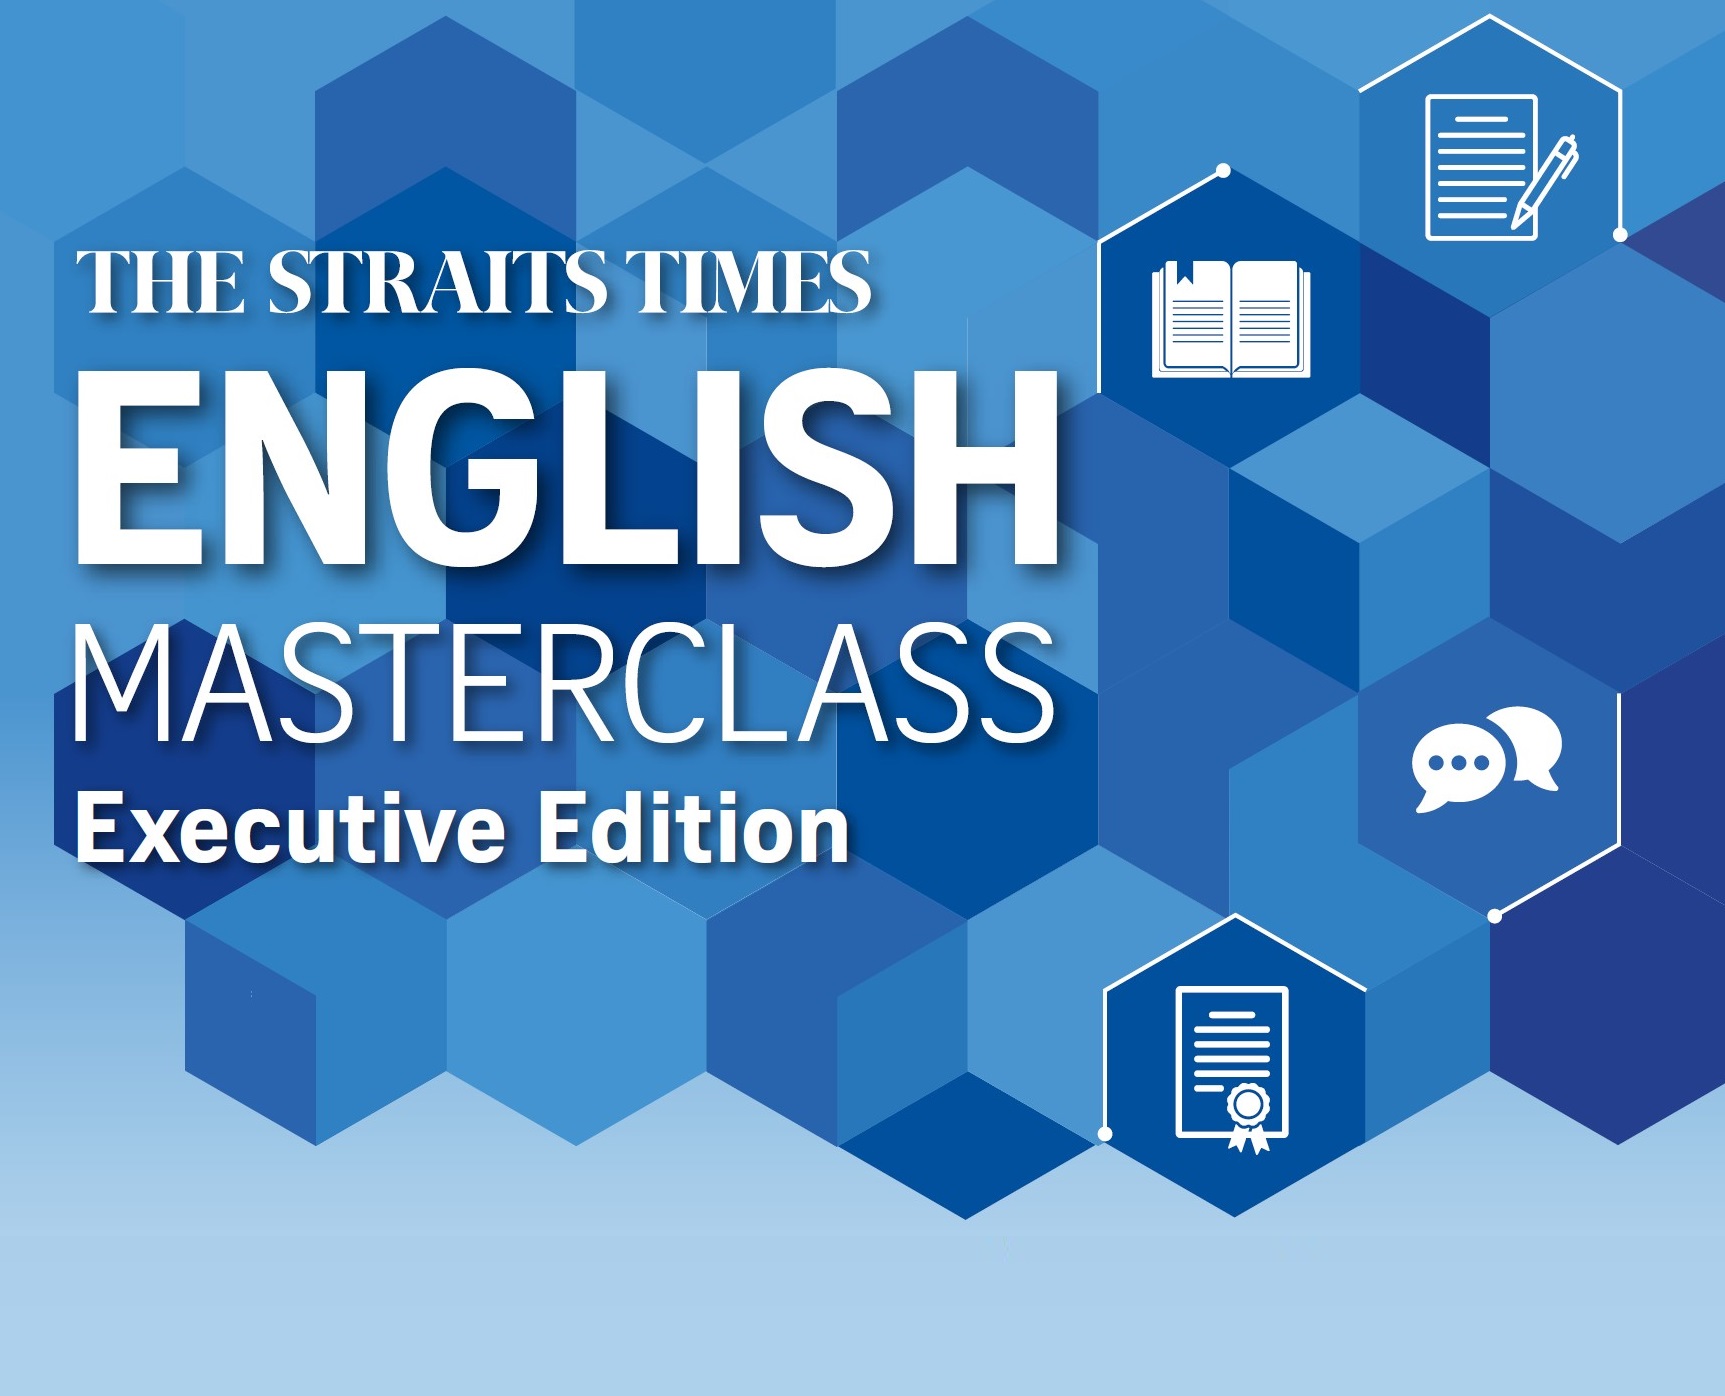 English Language Masterclass - Advanced